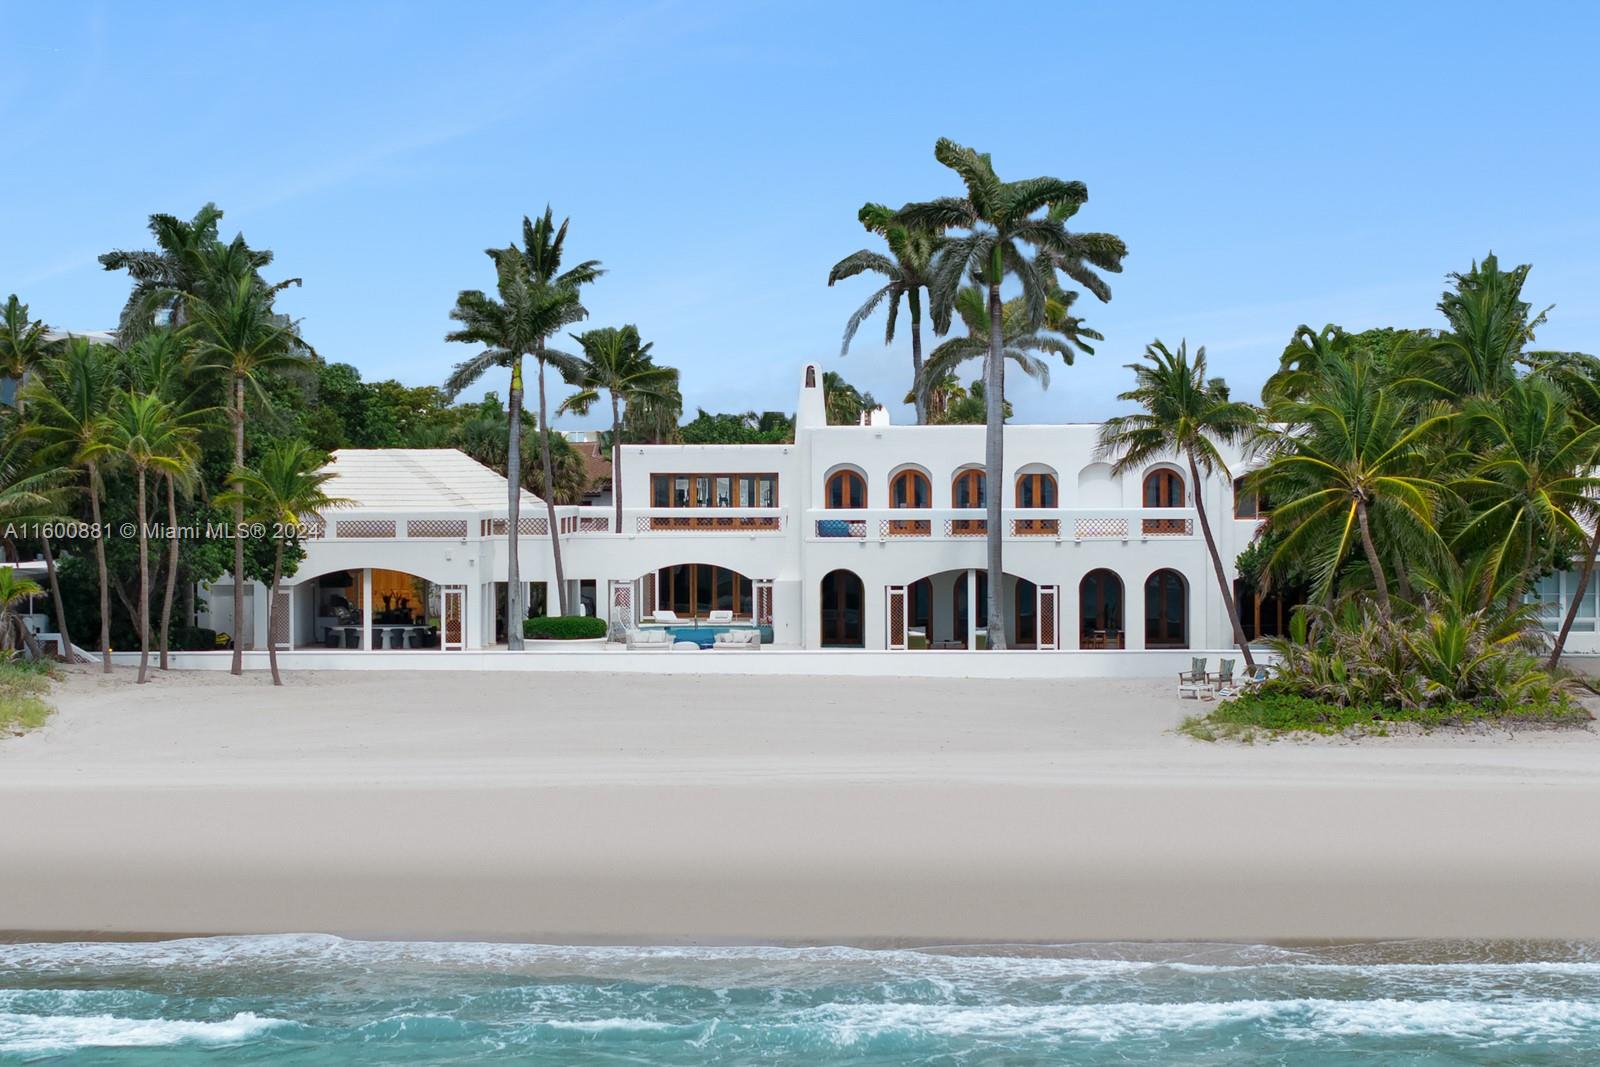 Property for Sale at 387 Ocean Blvd, Golden Beach, Miami-Dade County, Florida - Bedrooms: 6 
Bathrooms: 8  - $55,000,000